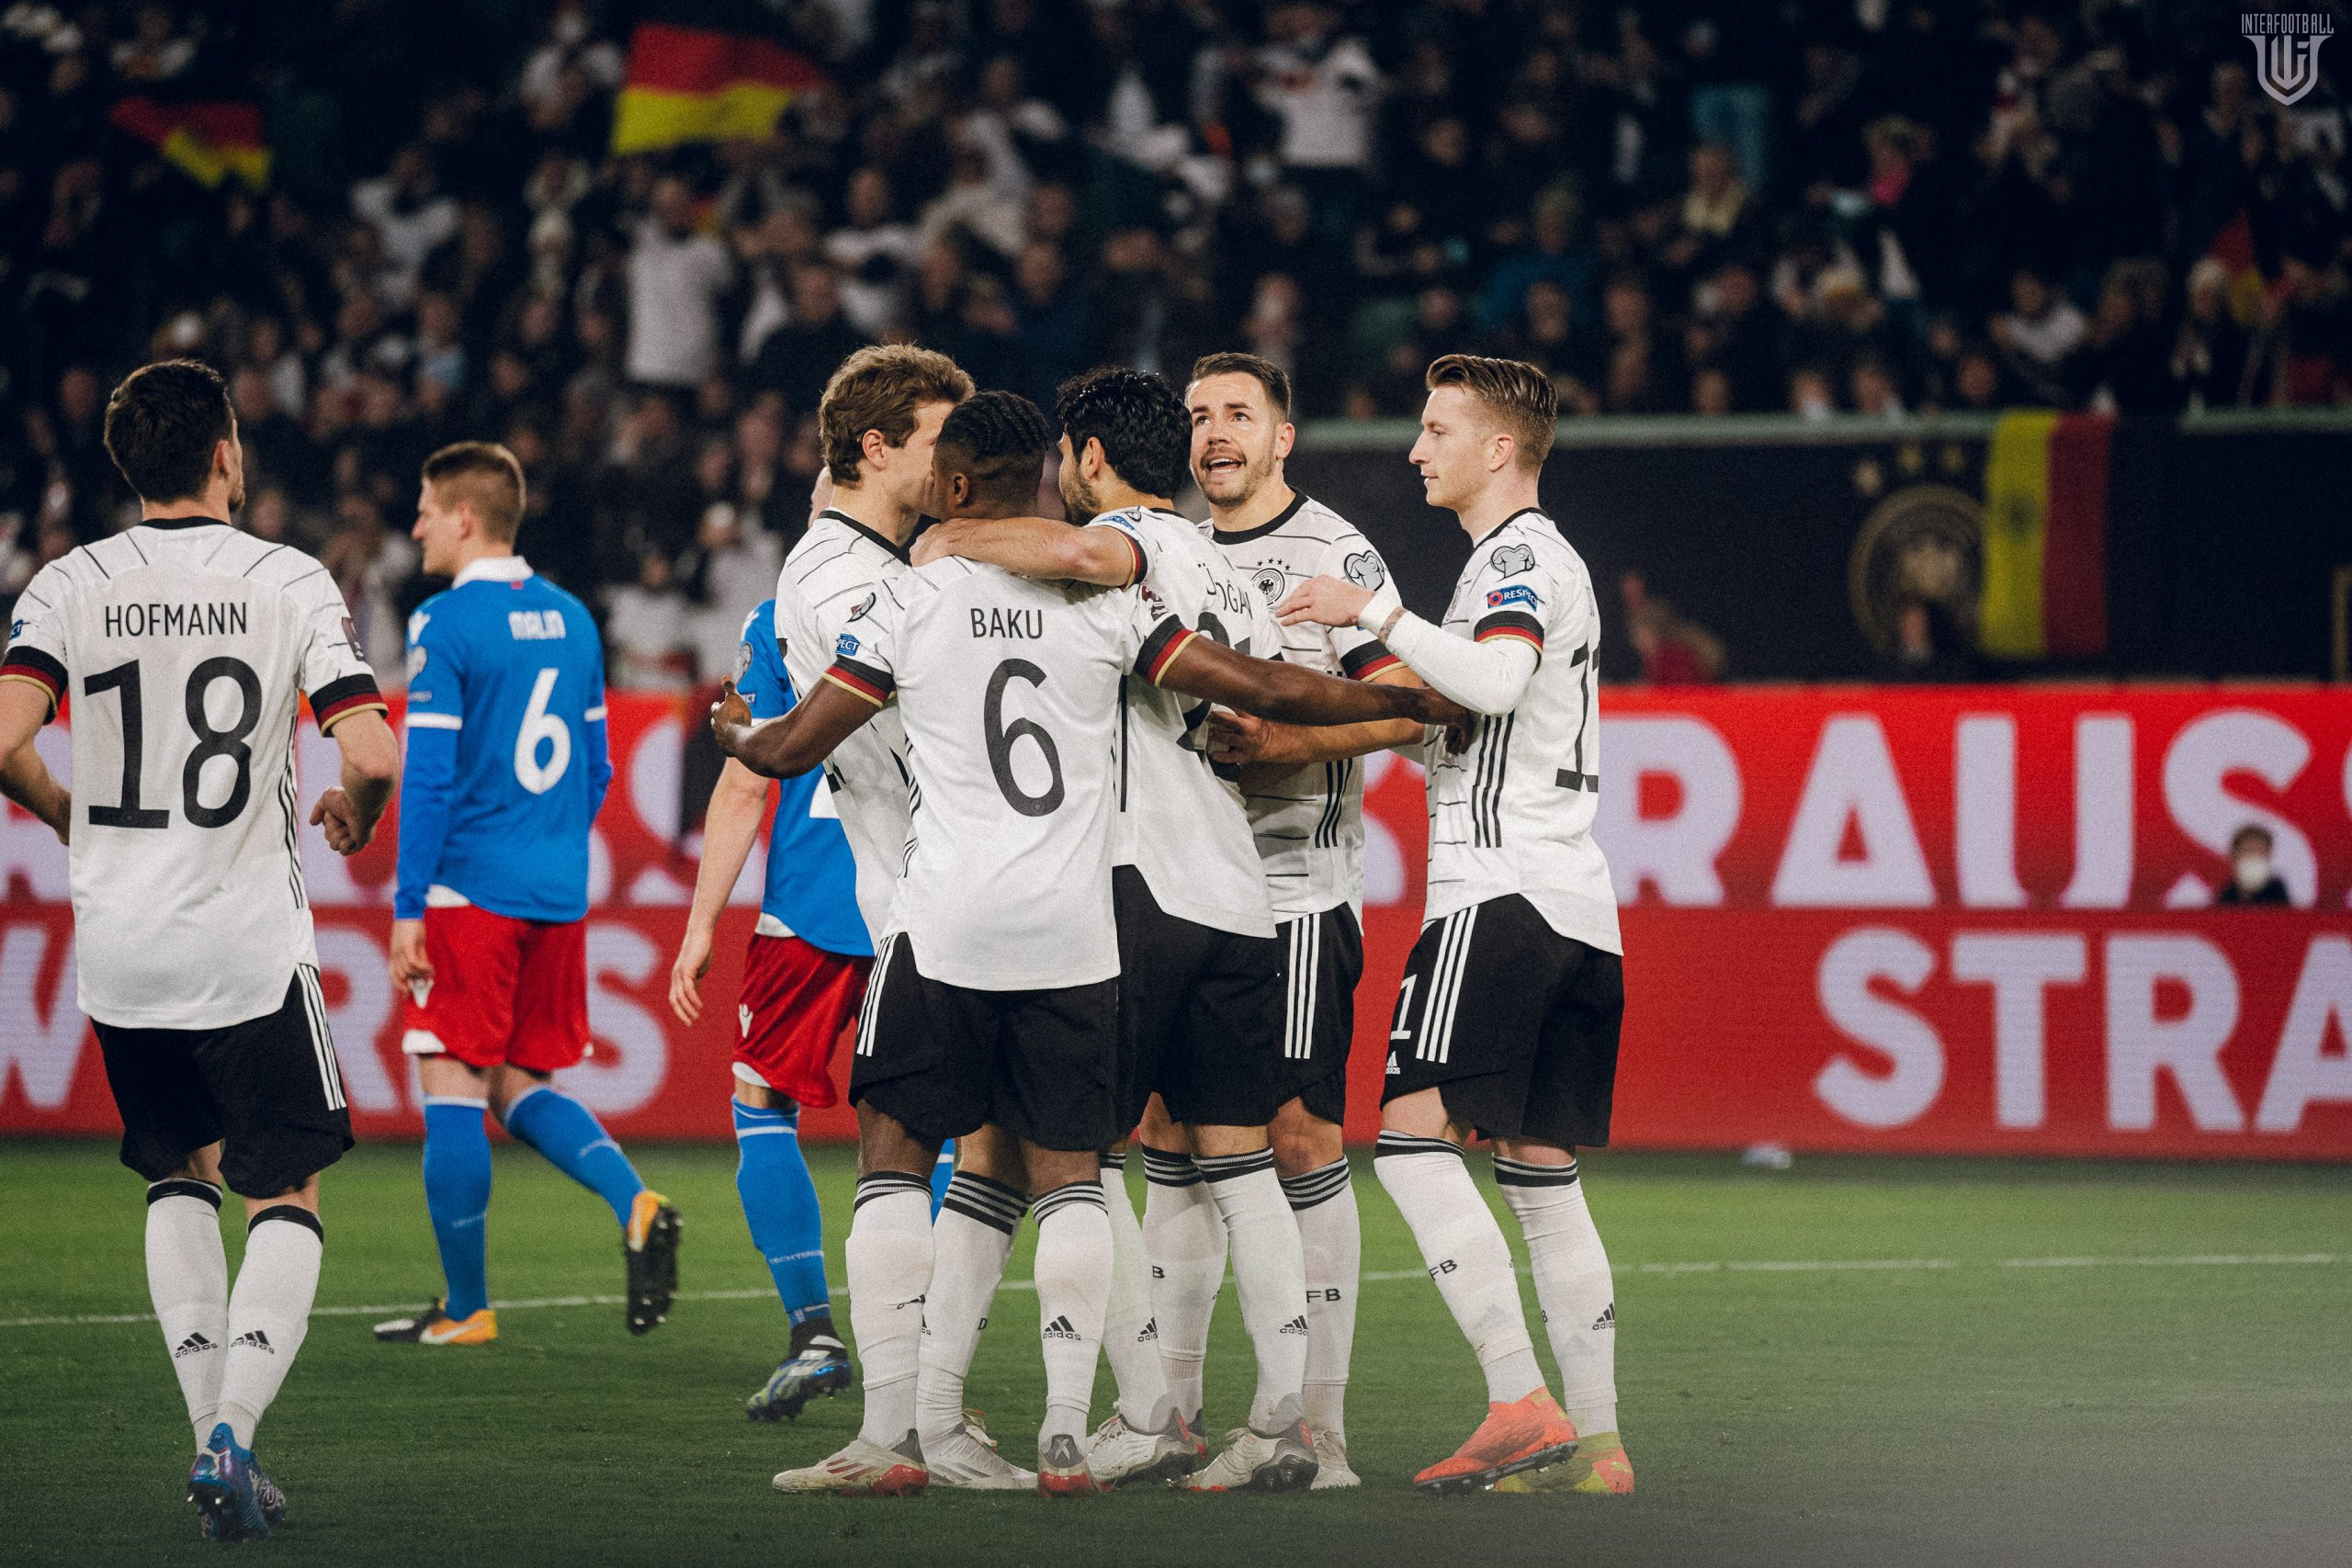 Գերմանիան 18+ հաշվով հաղթեց Լիխտենշտեյին, Ռումինիան ու Իսլանդիան չպարզեցին հաղթողին🎥